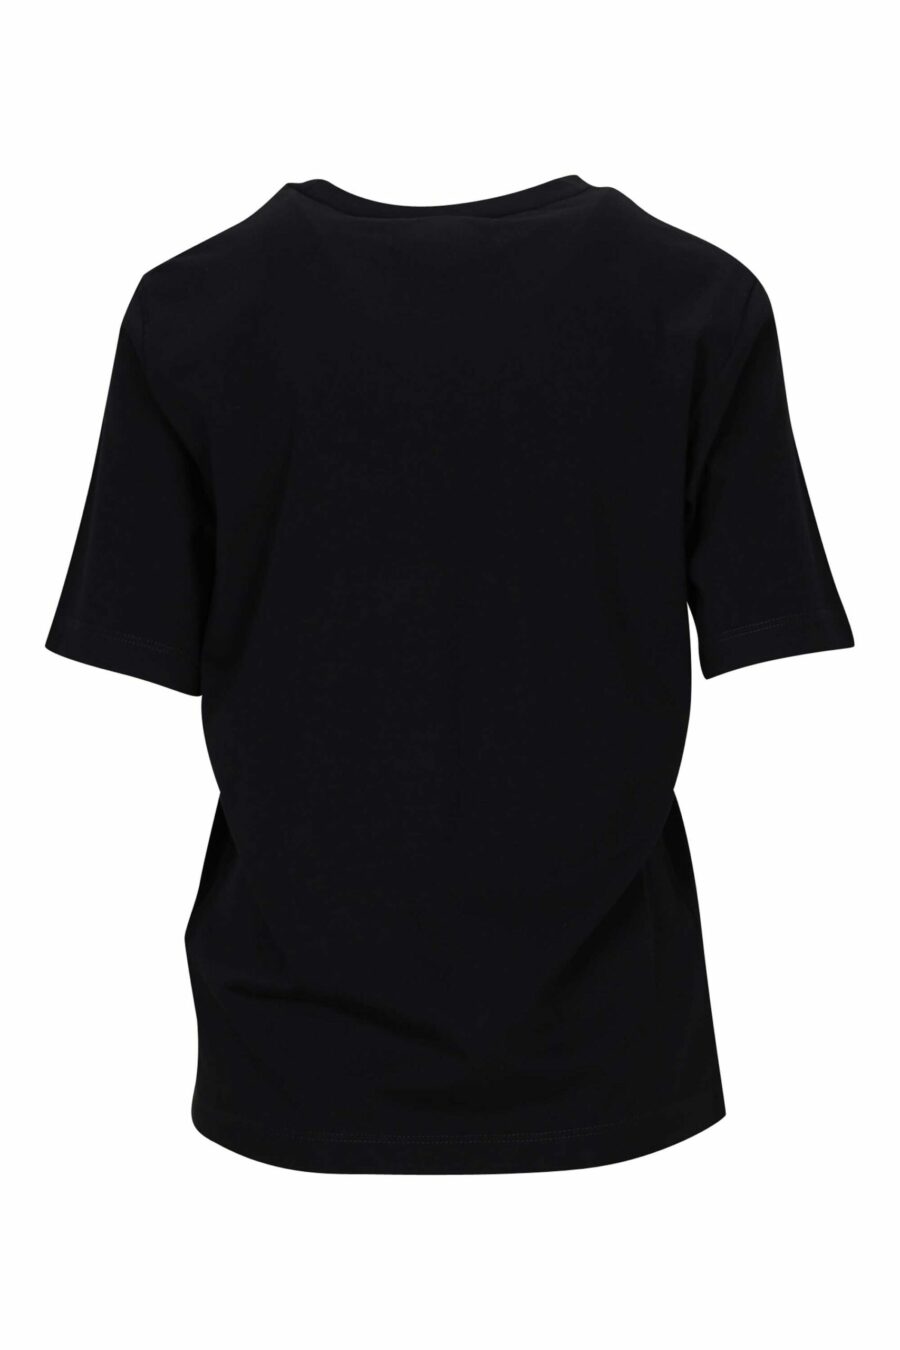 Camiseta negra con logo fucsia neon borroso - 8054148406530 1 scaled